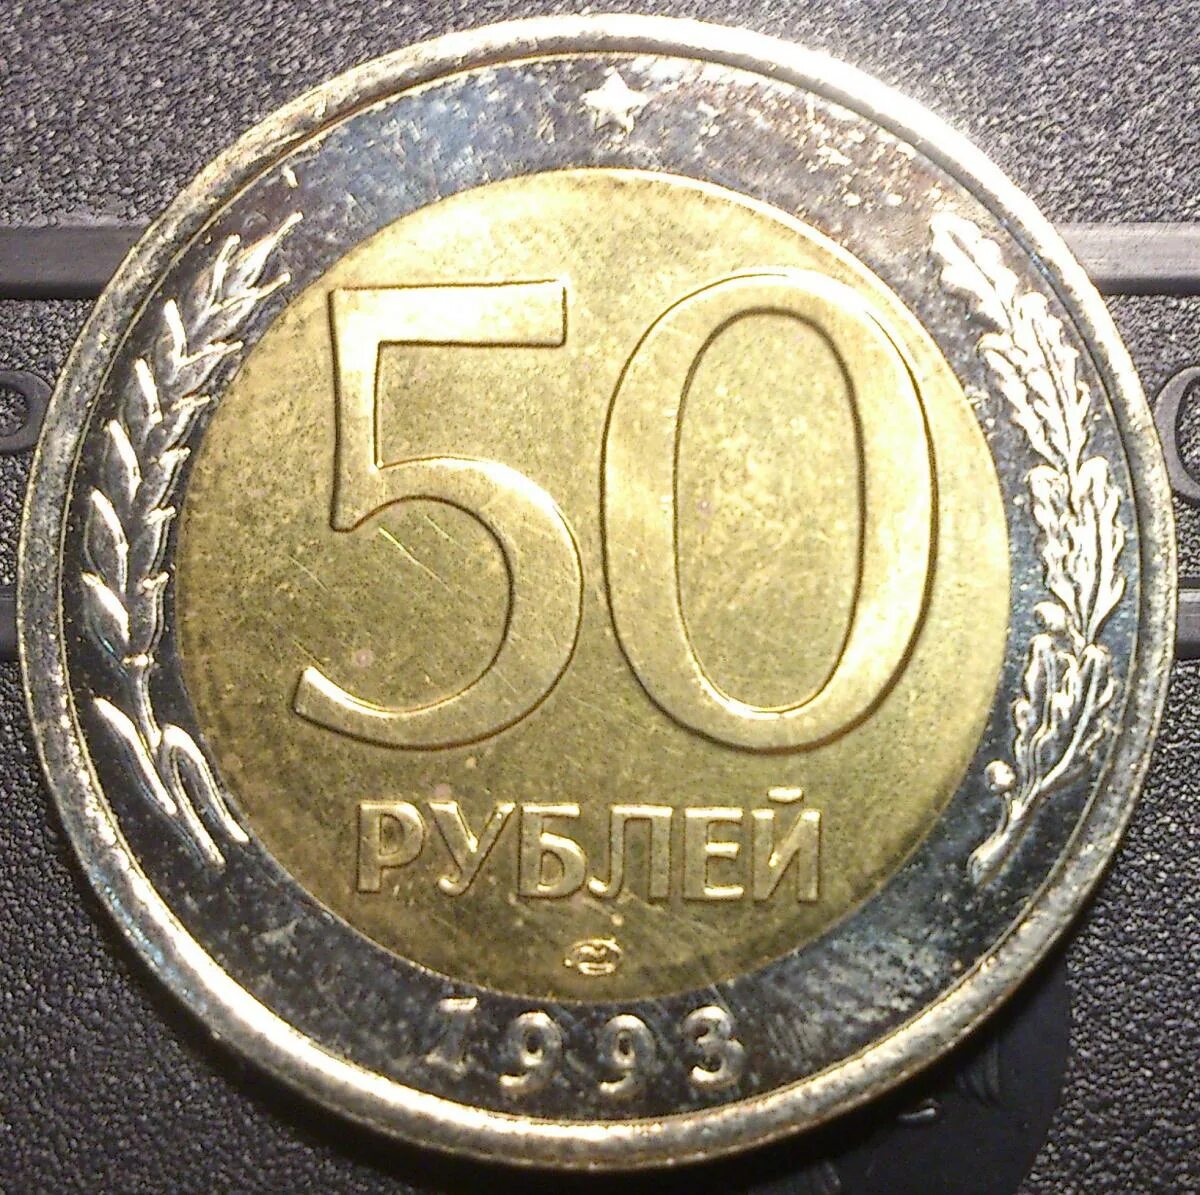 Пятьдесят рублей монет. 50 Руб. 1993 года ЛМД Биметалл. 50 Рублей 1993 г. ЛМД , биметаллические. Монета 50 рублей 1993 года Биметалл. 50 Рублей 1993 года биметаллическая.